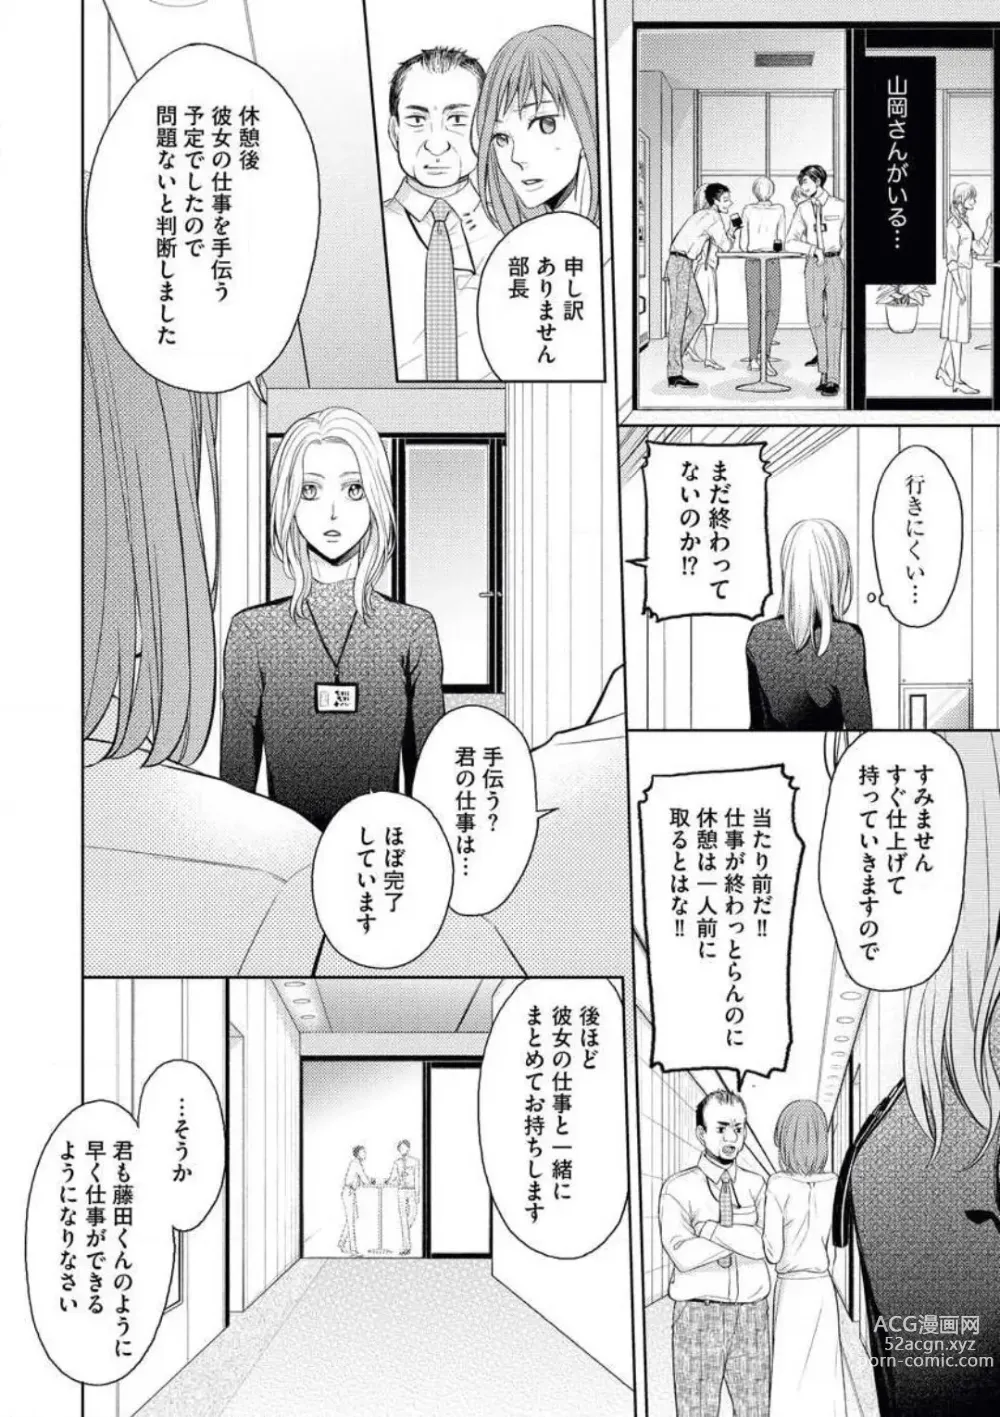 Page 14 of manga Mitsu Koi Maisonette